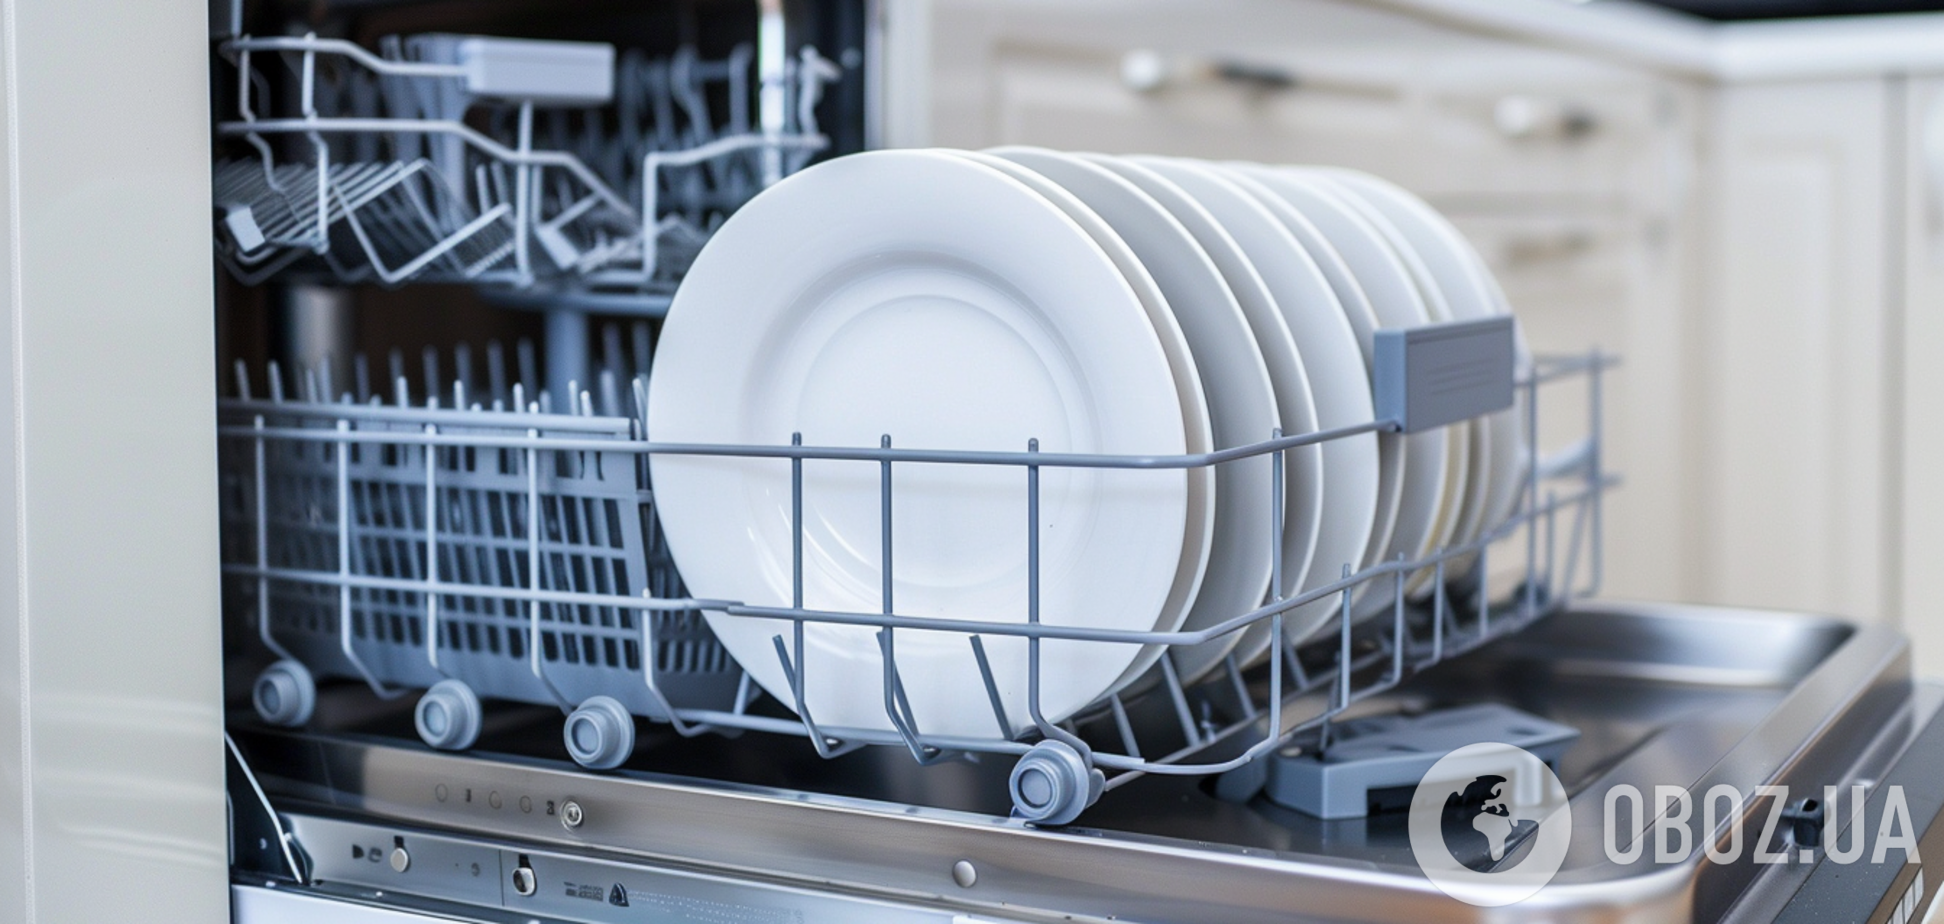 Будет работать идеально: как правильно очищать посудомоечную машину